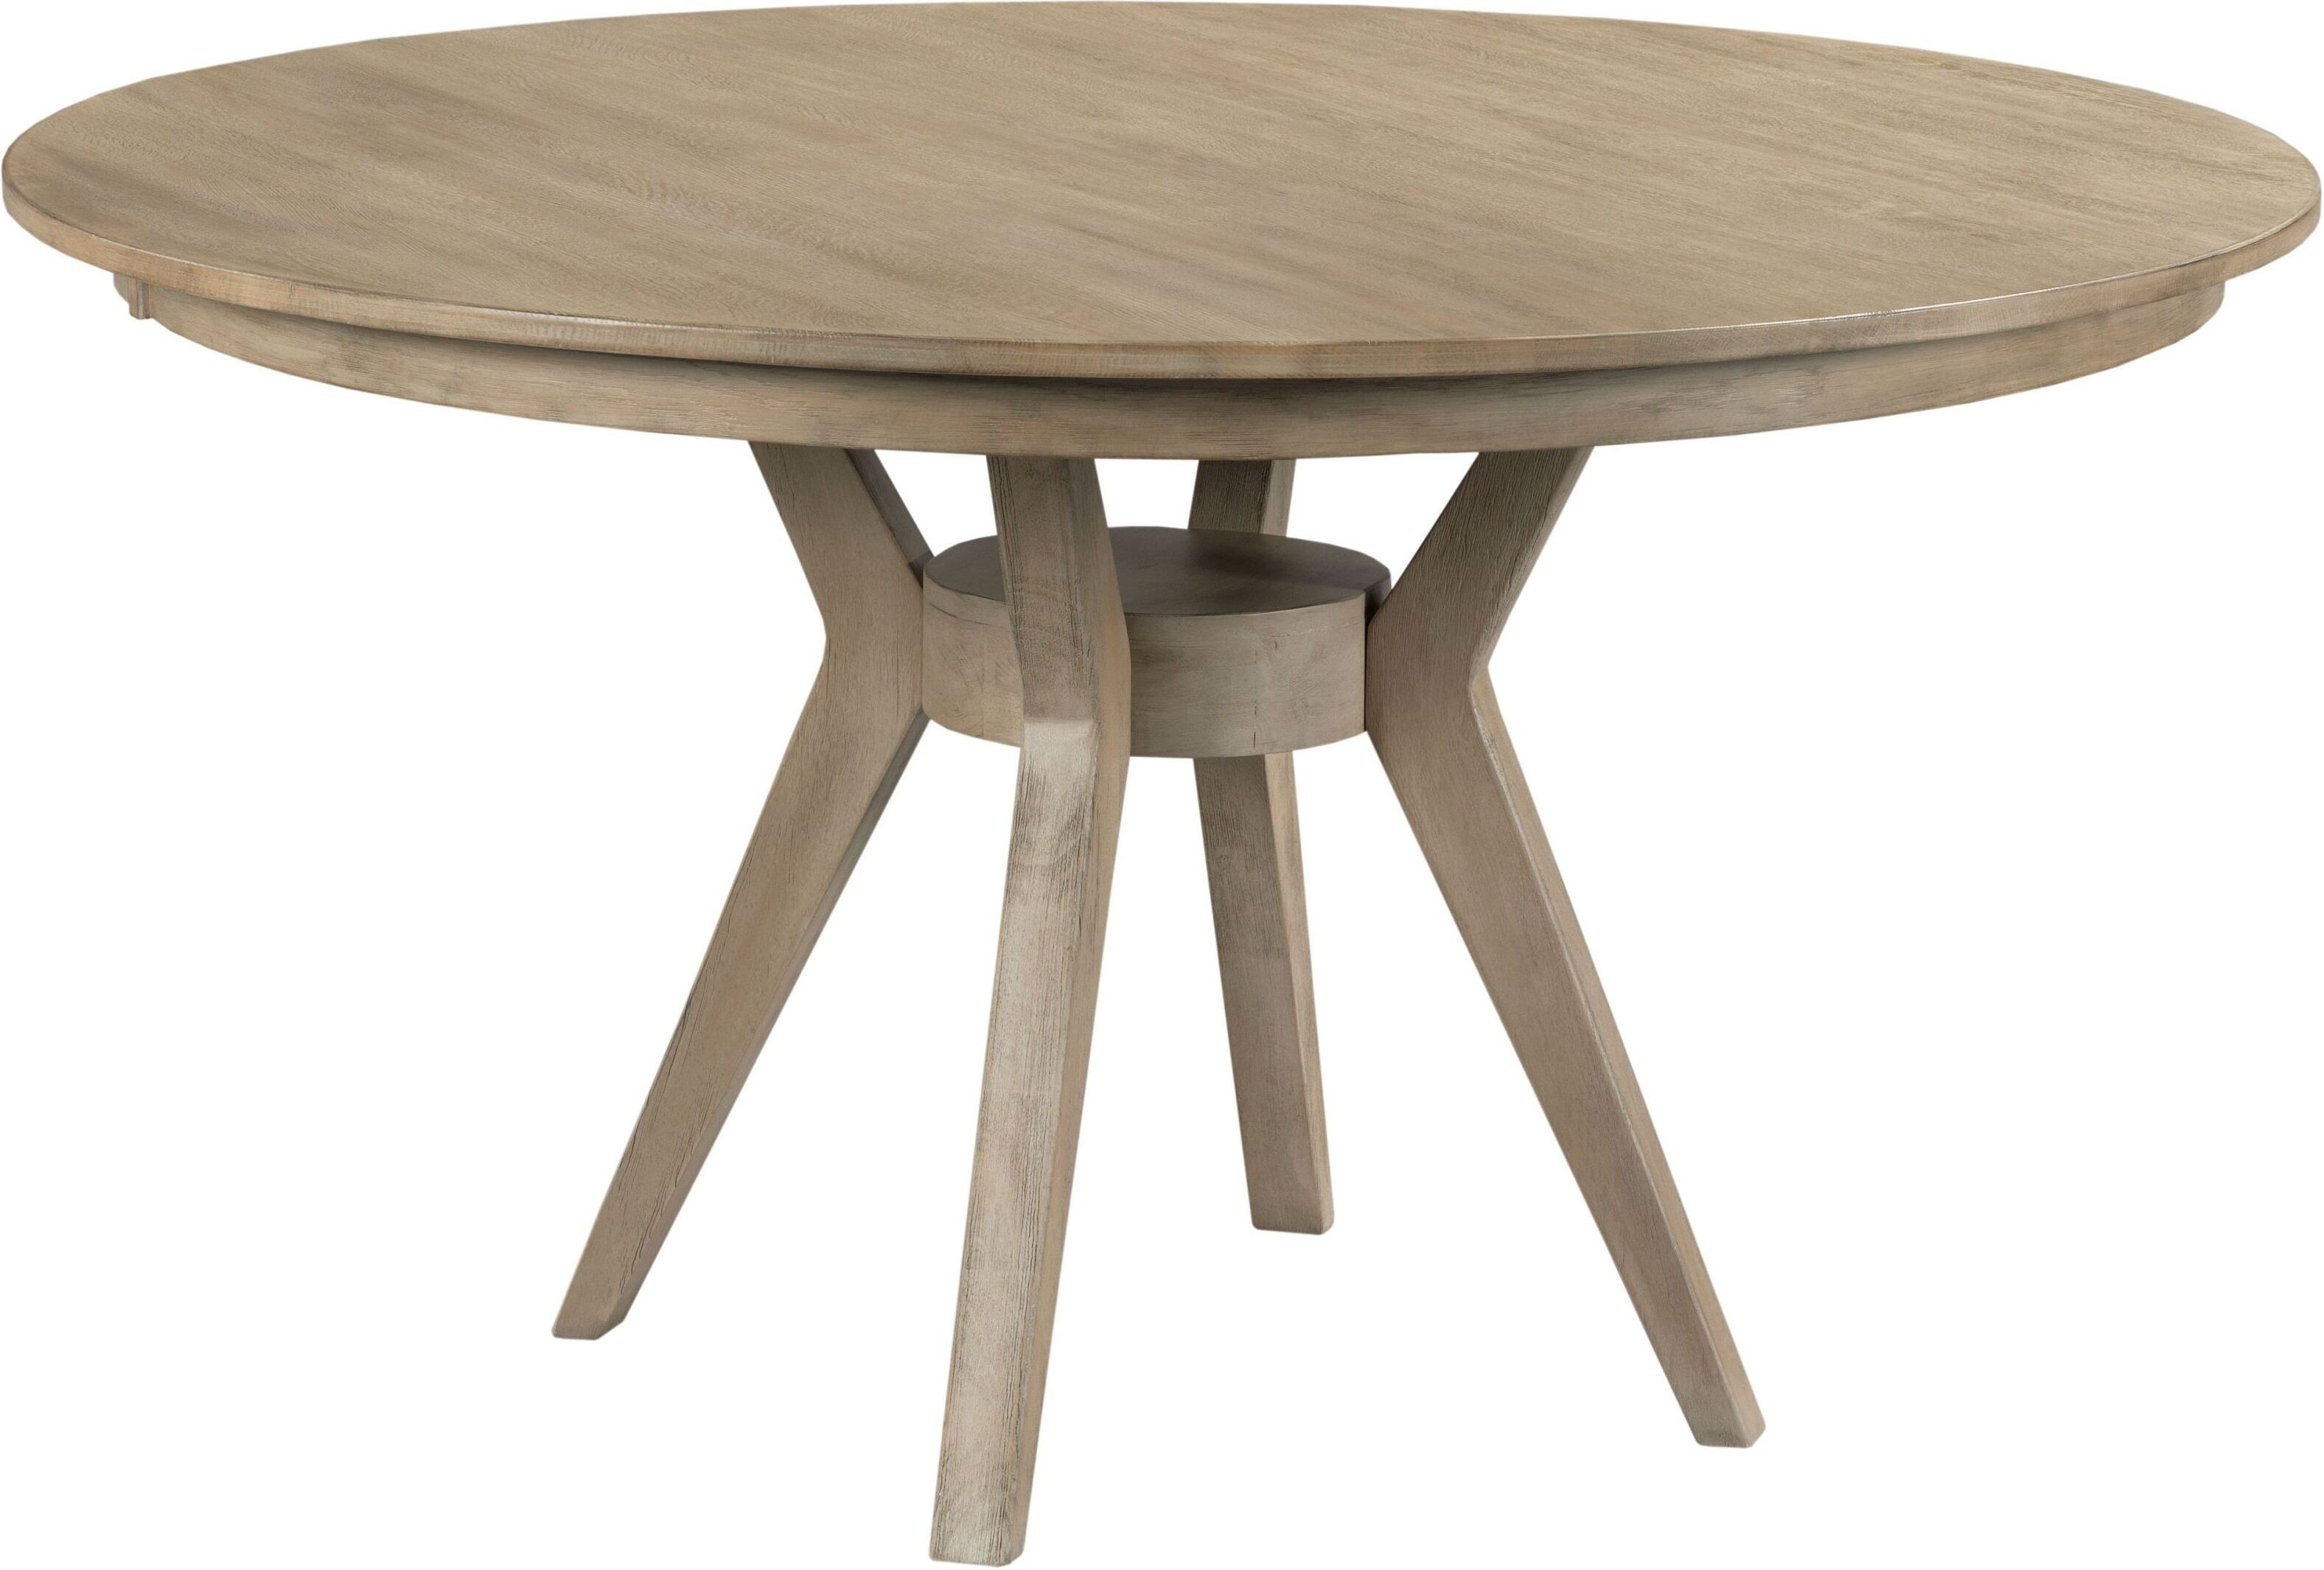  54 inch round kitchen table